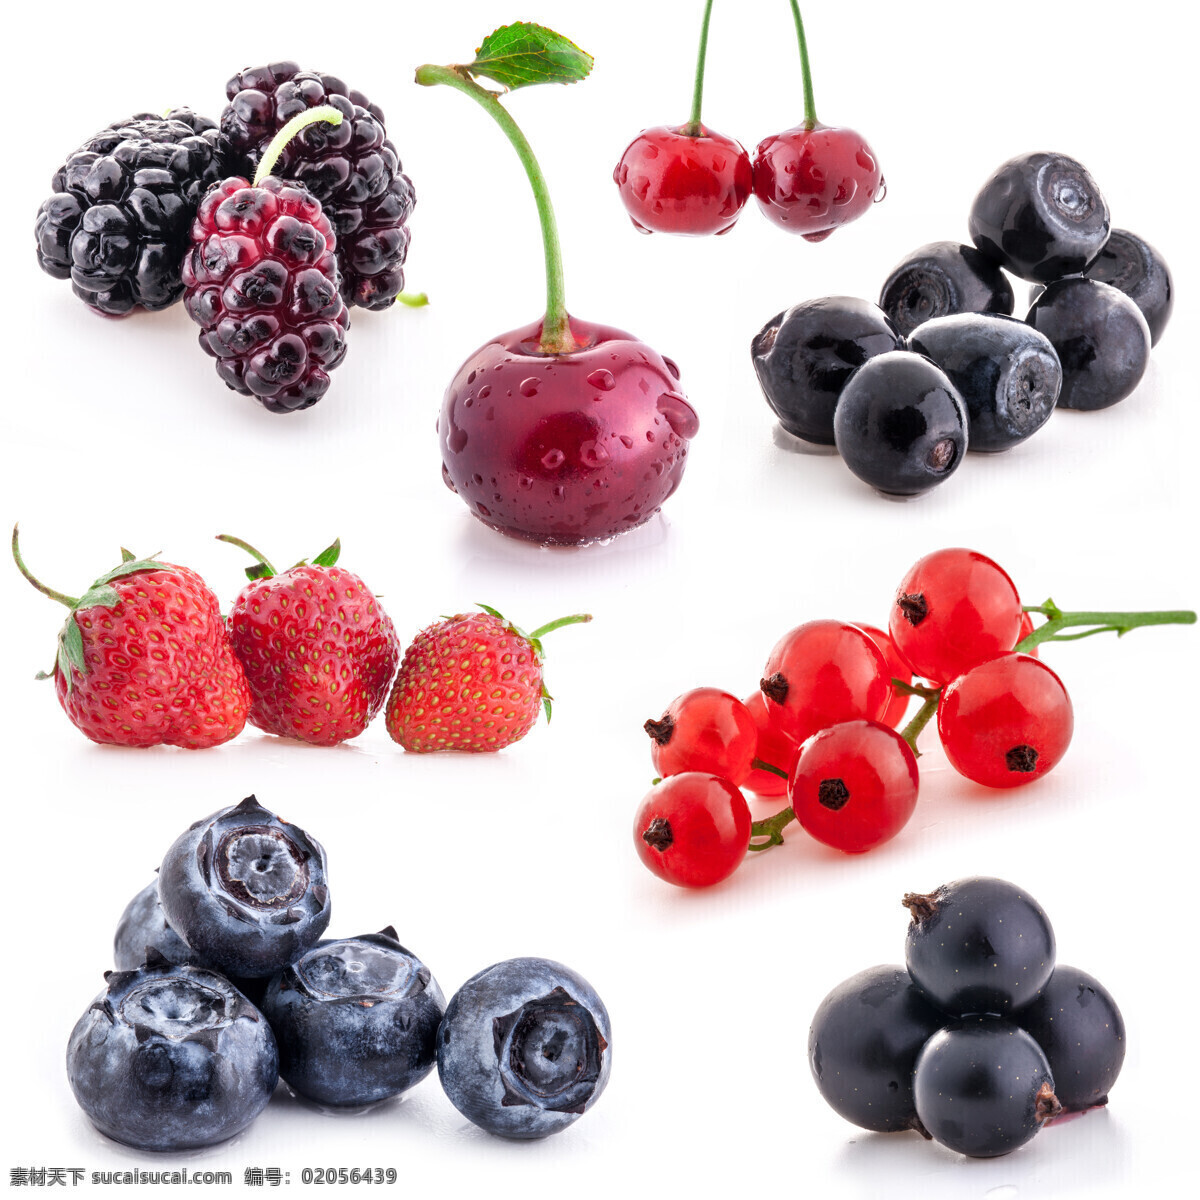 各种 水果 各种水果摄影 蓝莓 樱桃 车厘子 桑果 餐厅美食 水果图片 餐饮美食